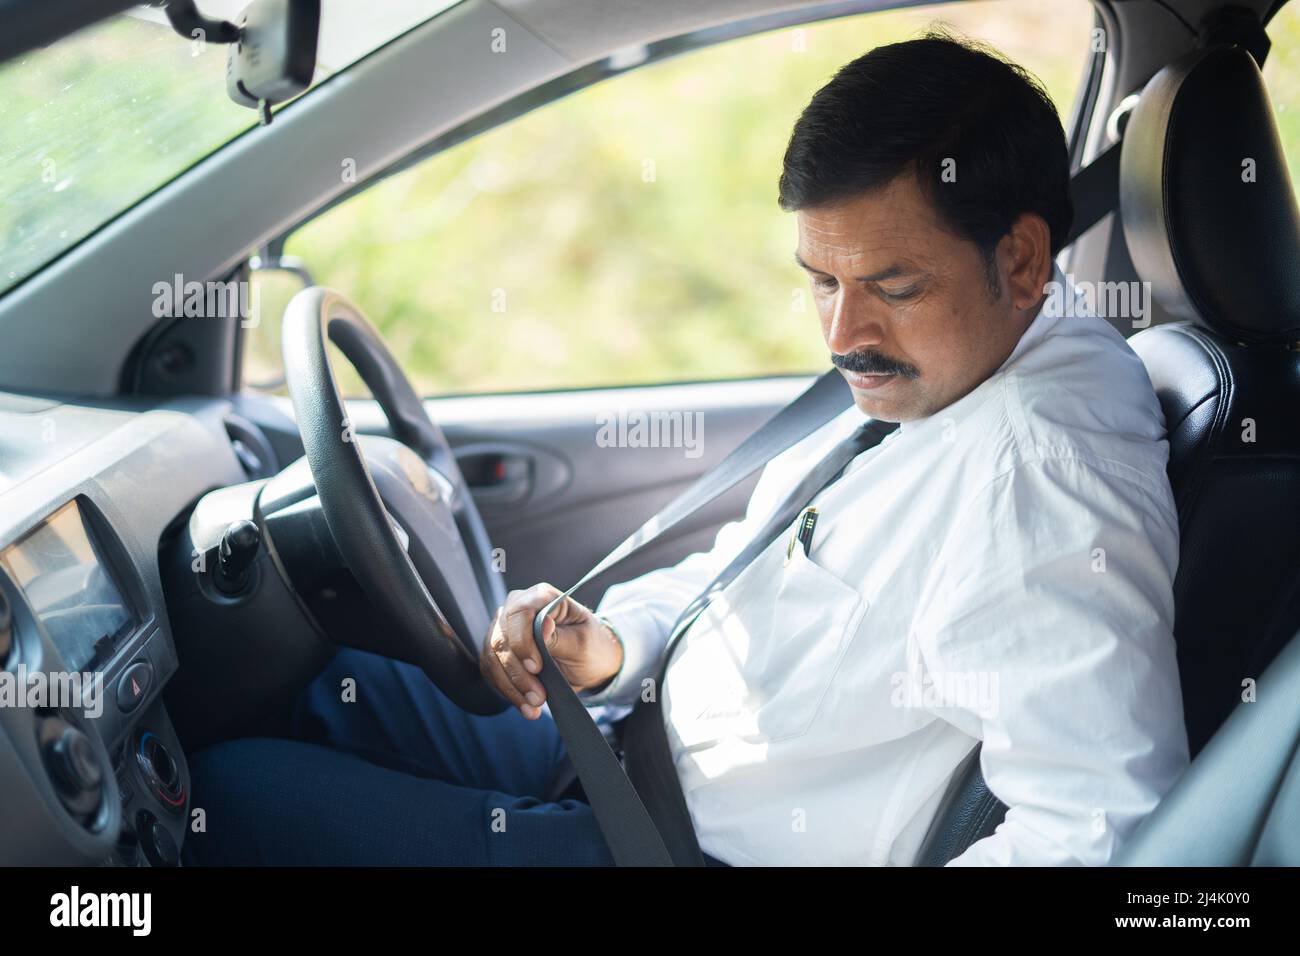 Geschäftsmann, der vor dem Autofahren Sicherheitsgurt angelegt hat – Konzept der Sicherheitsvorkehrungen, des Schutzes und der Verantwortung. Stockfoto